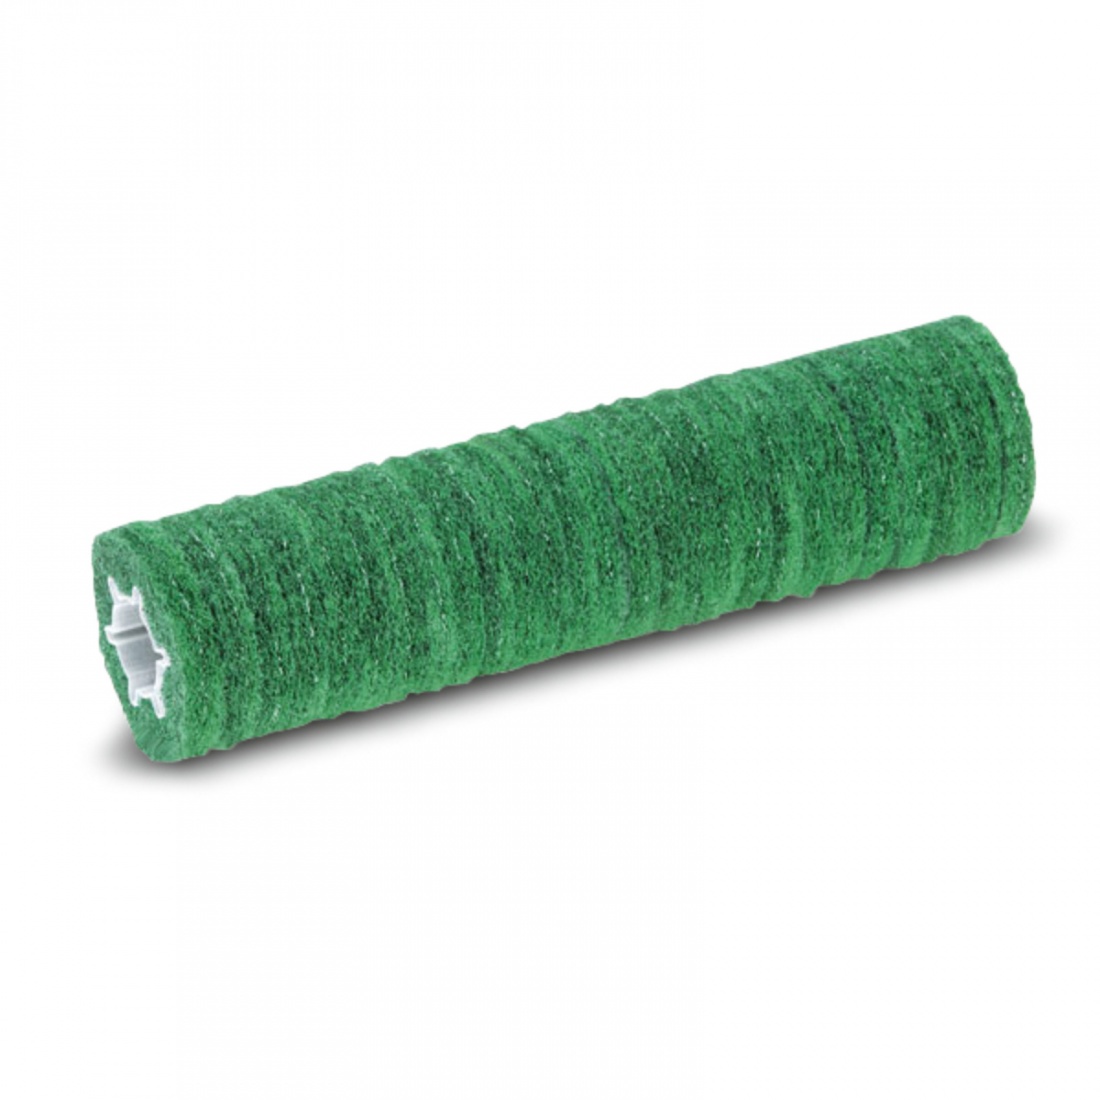 Втулка с роликовыми падами, жесткий, зеленый, 450 mm